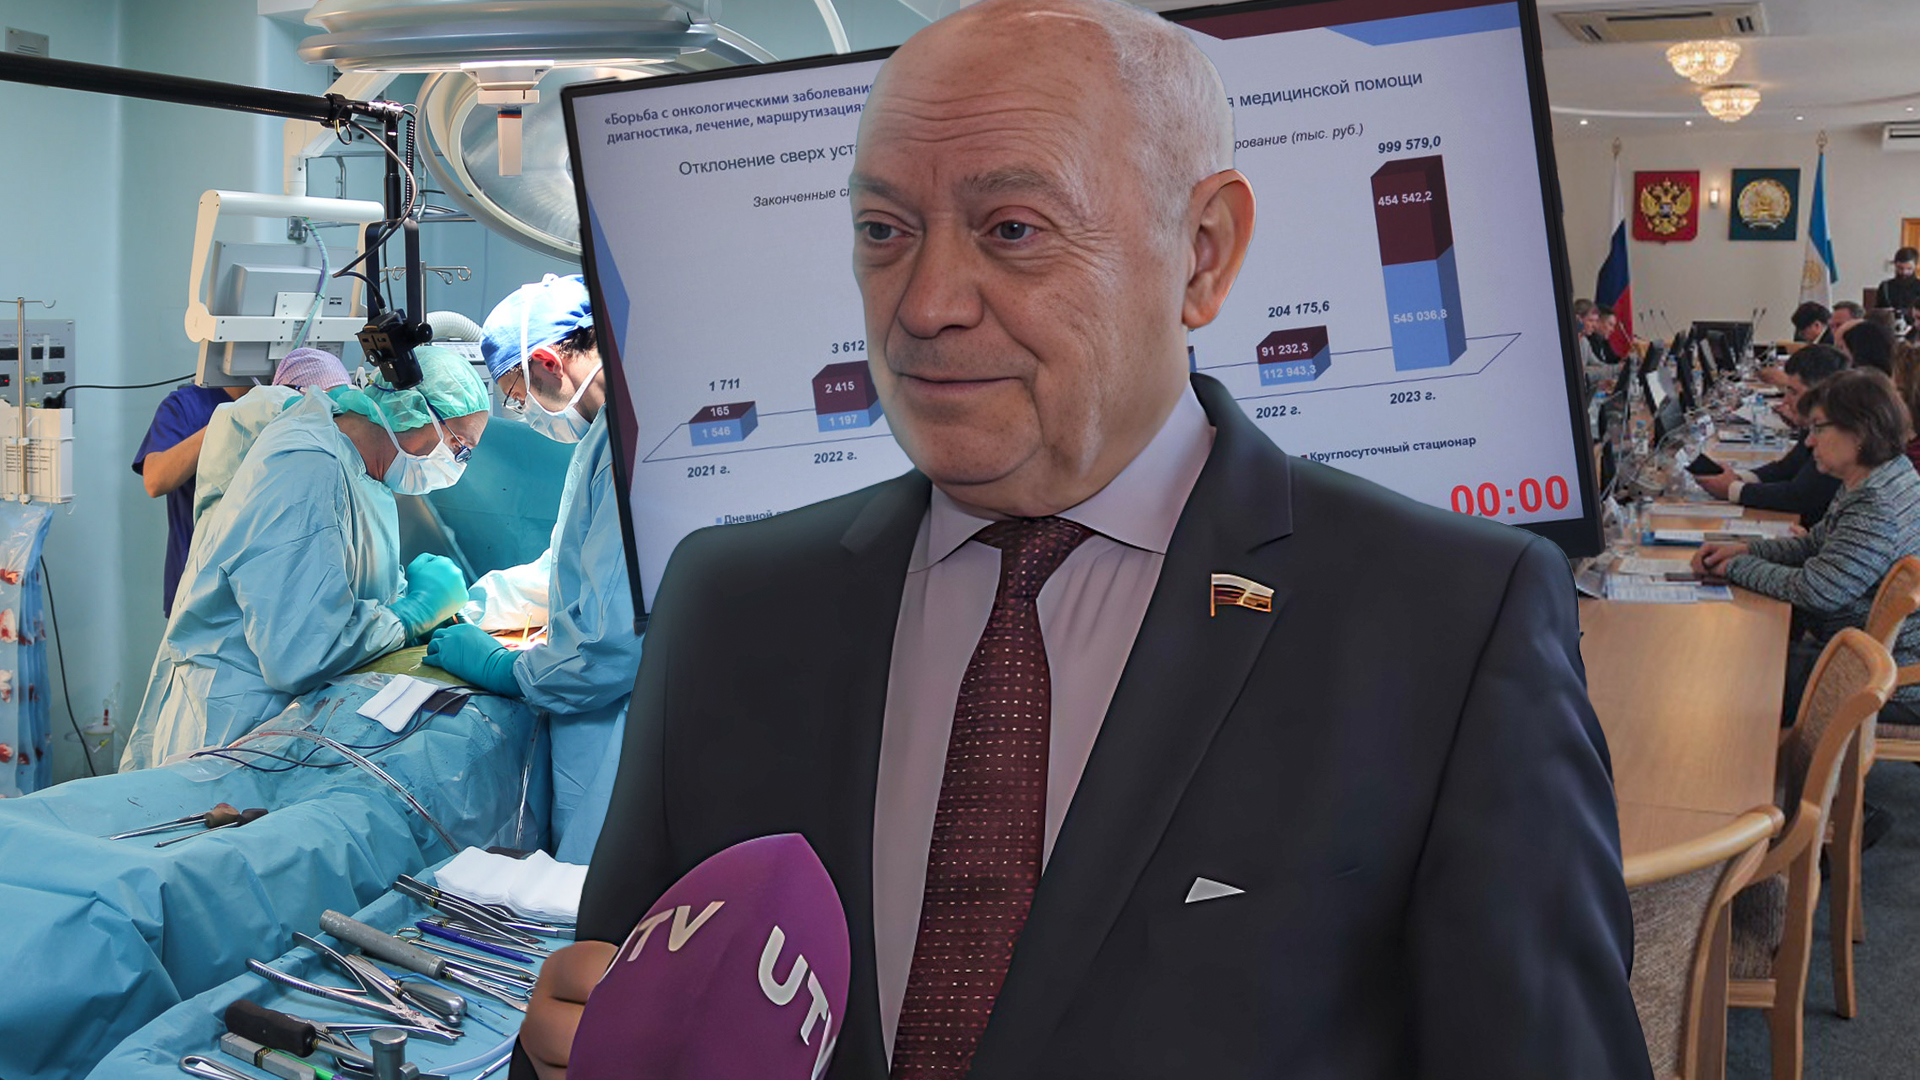 В Башкирии растет заболеваемость раком - что думают московские врачи?